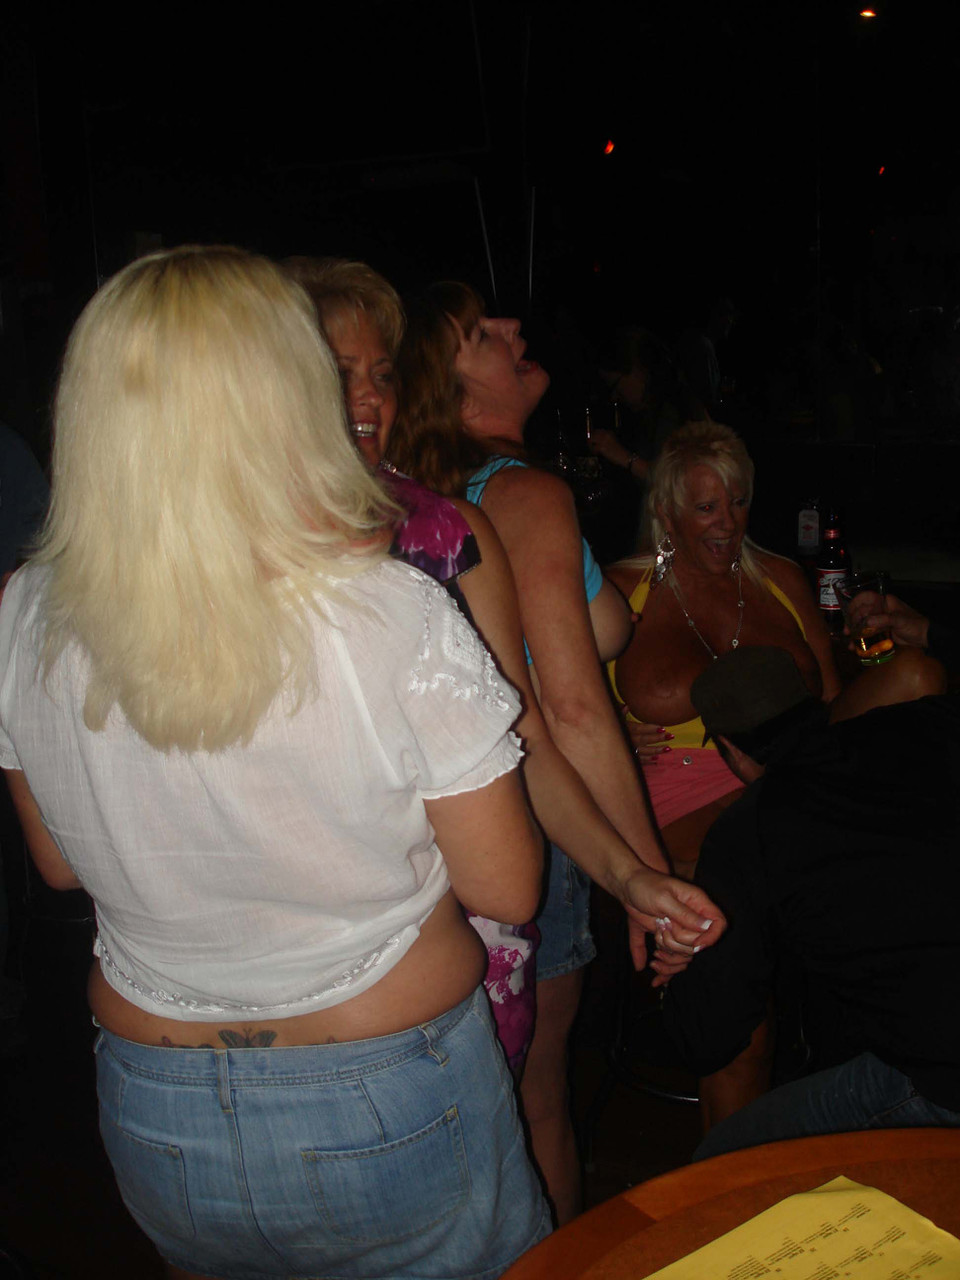 Real Tampa Swingers Dee Delmar, Double Dee, Mandi Mcgraw, Tracy Lick photo porno #424445794 | Real Tampa Swingers Pics, Dee Delmar, Double Dee, Mandi Mcgraw, Tracy Lick, Party, porno mobile